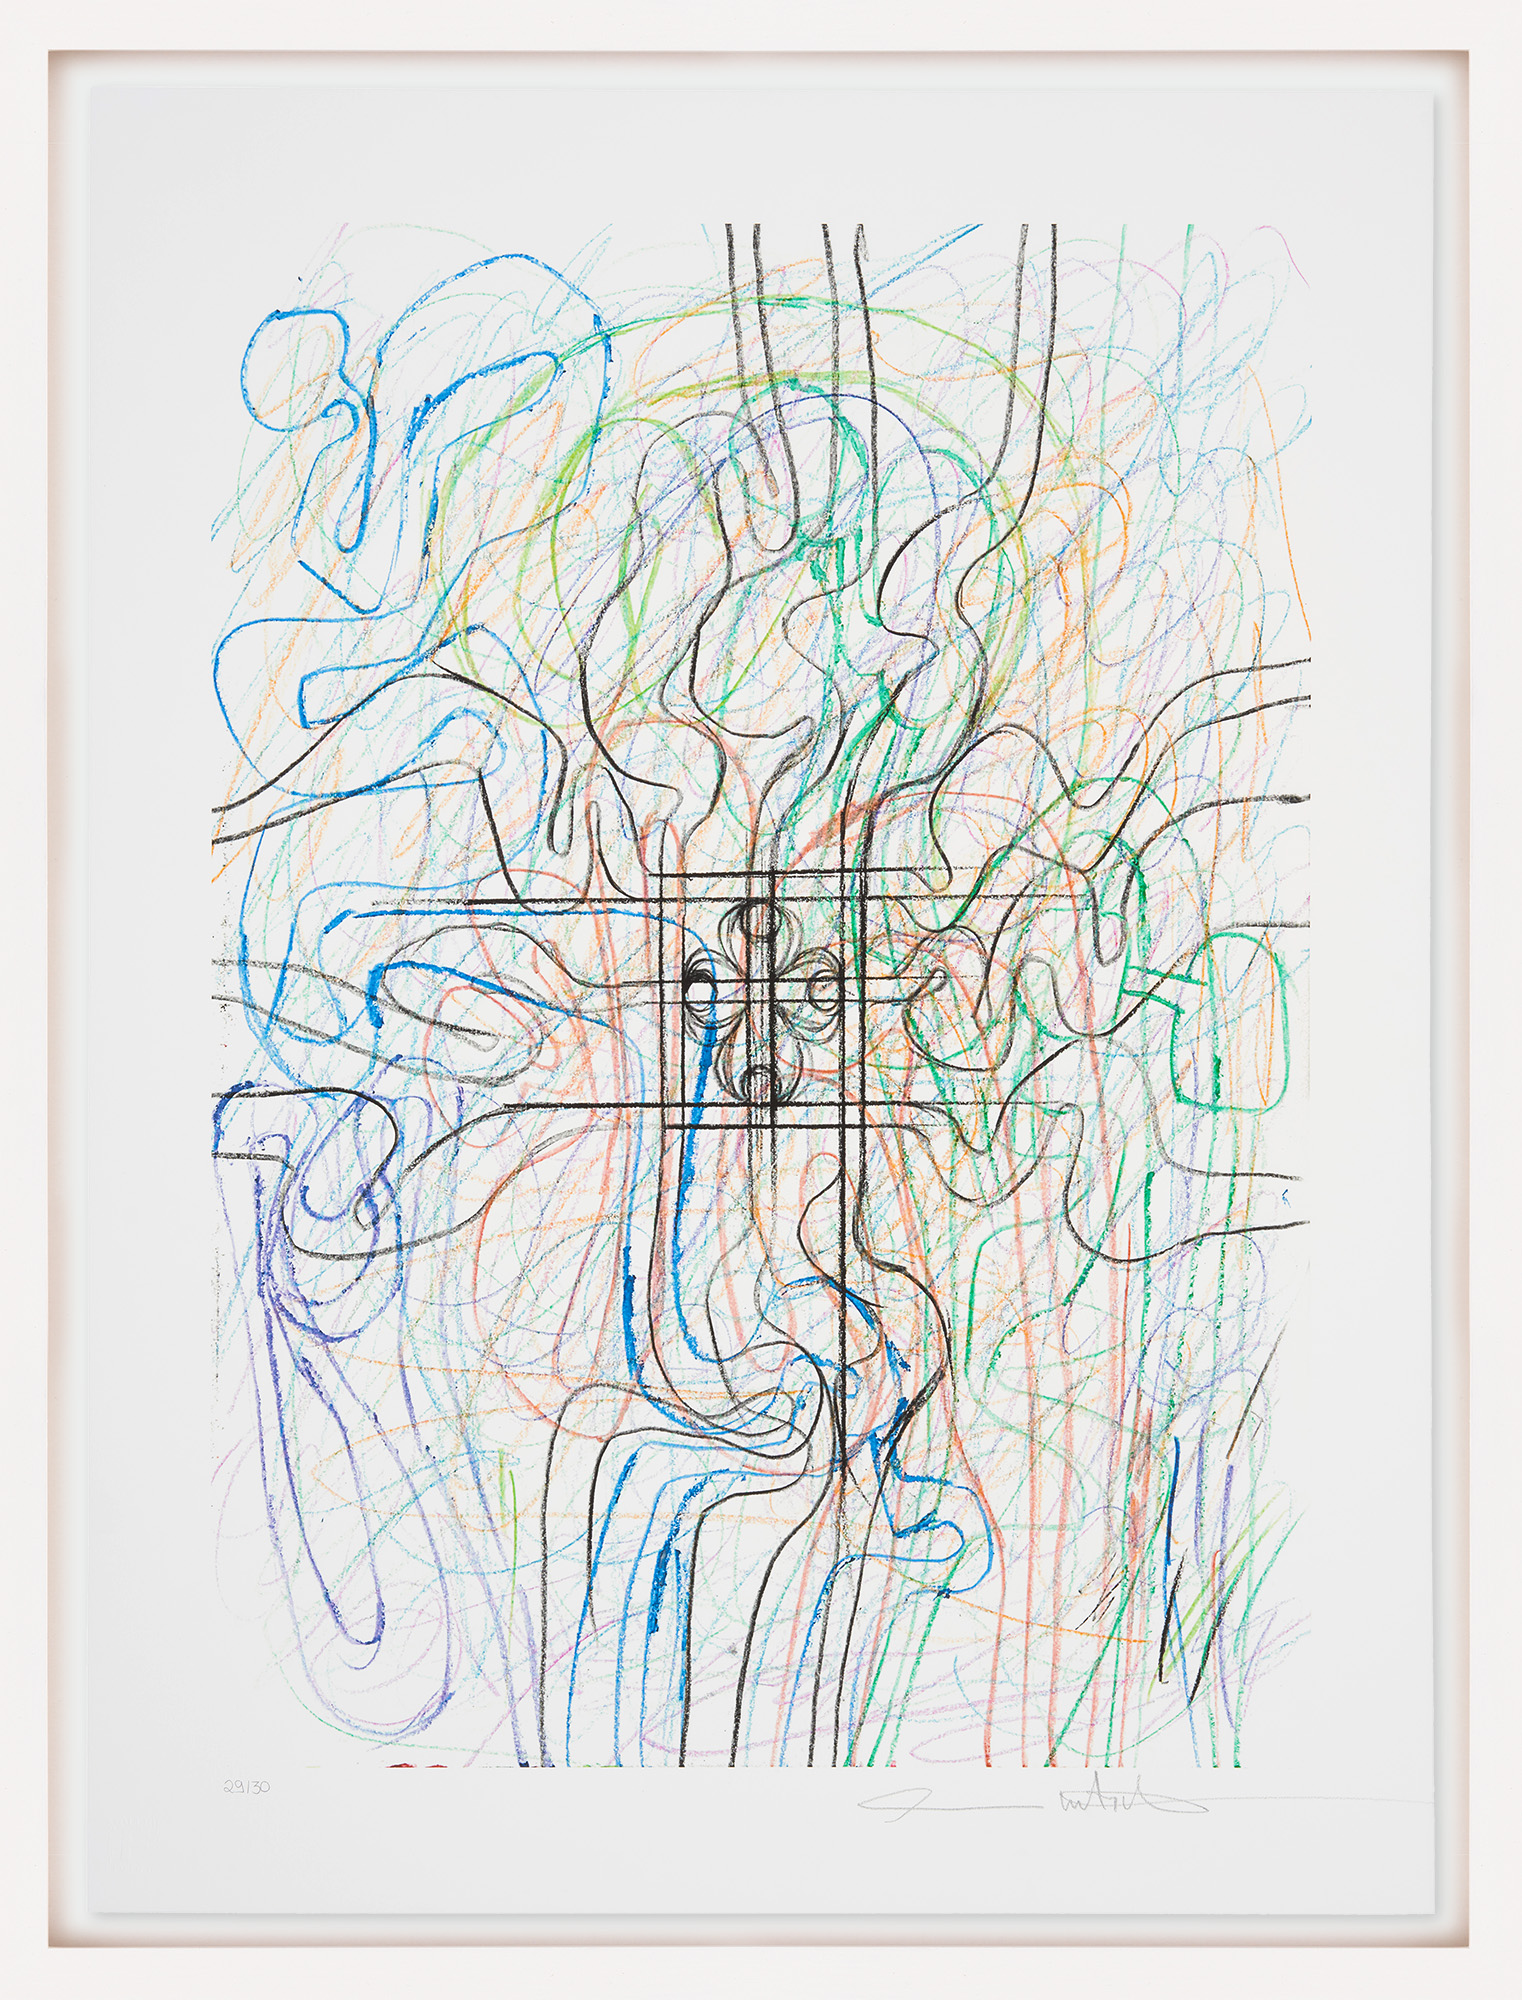 Bild "Zeichnungsedition Motiv 2 (blau-grün)" (2015) von Hermann Nitsch